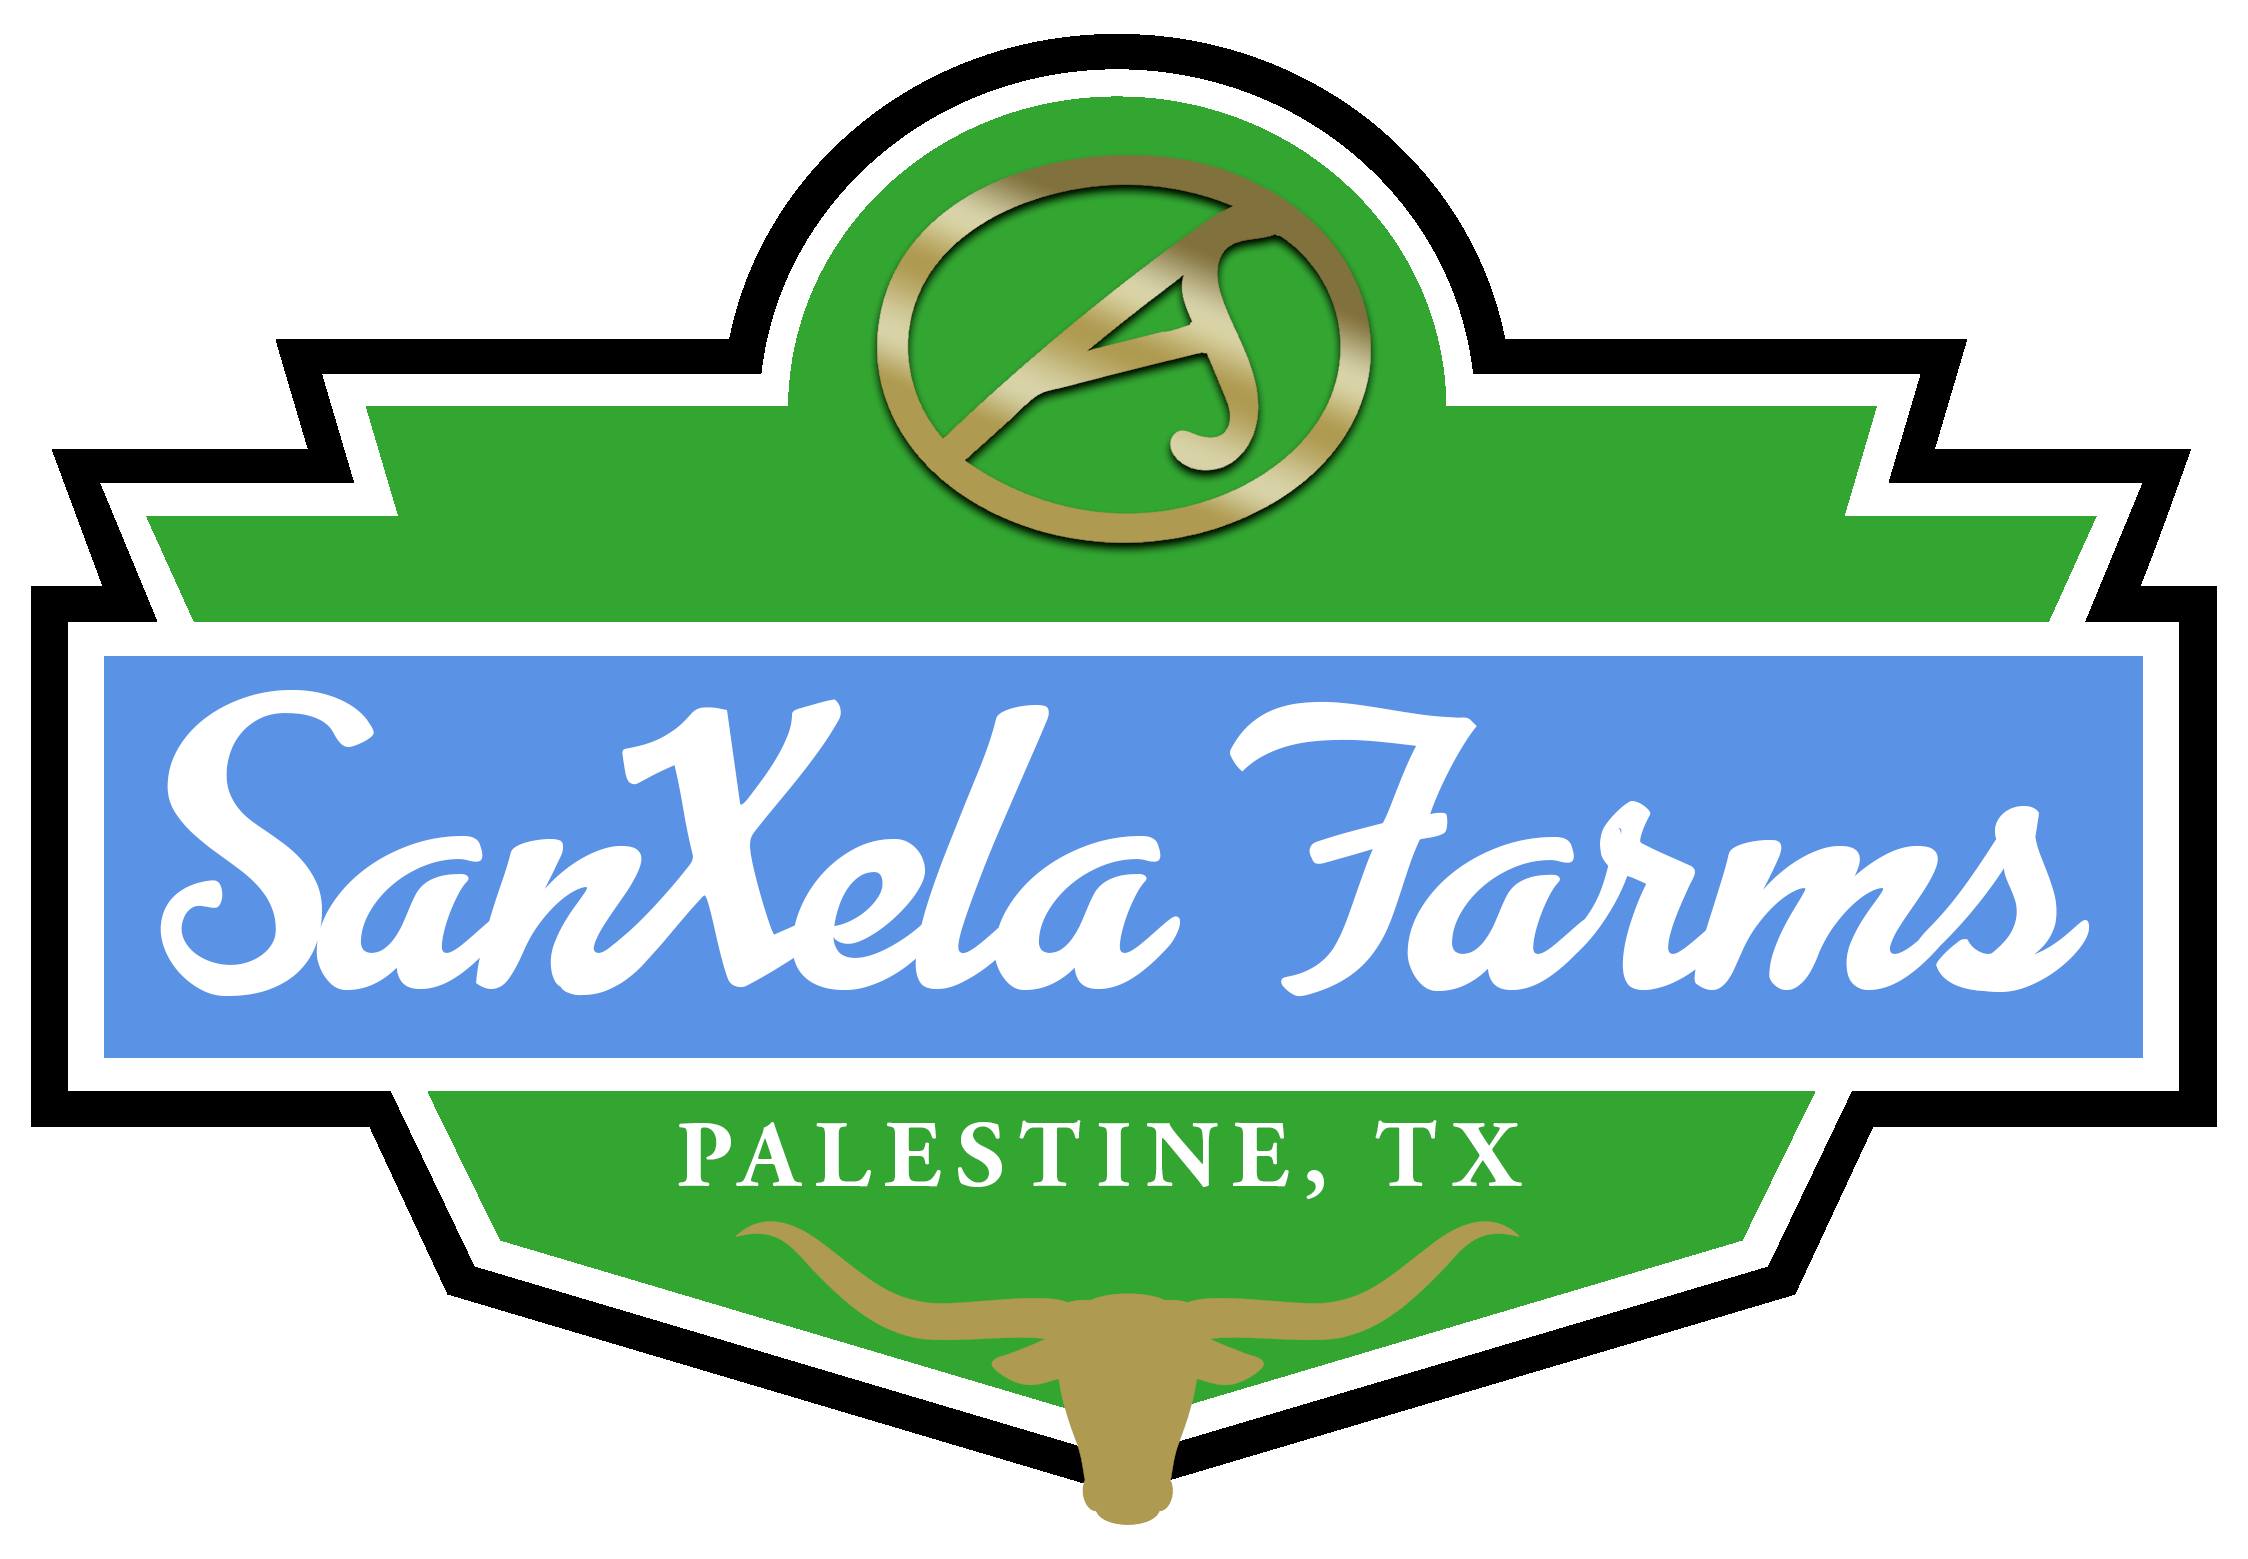 SanXela Farms